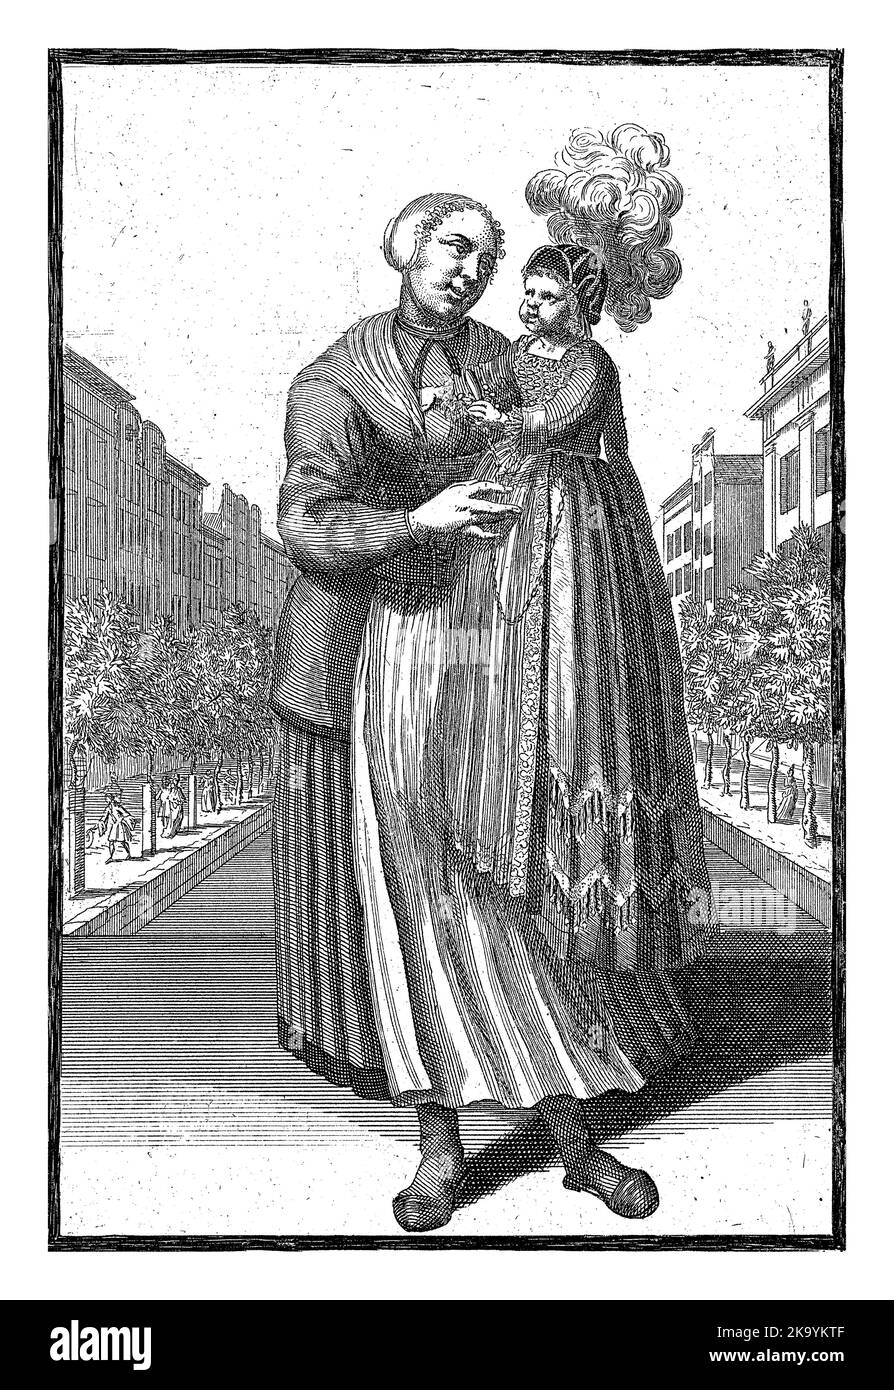 Eine Krankenschwester hält ein Kind auf ihrem Arm. Das Kind ist in ein reich verziertes Kleid gekleidet und trägt eine Mütze mit einer Feder auf dem Kopf. Drucken aus einer Serie von Stockfoto